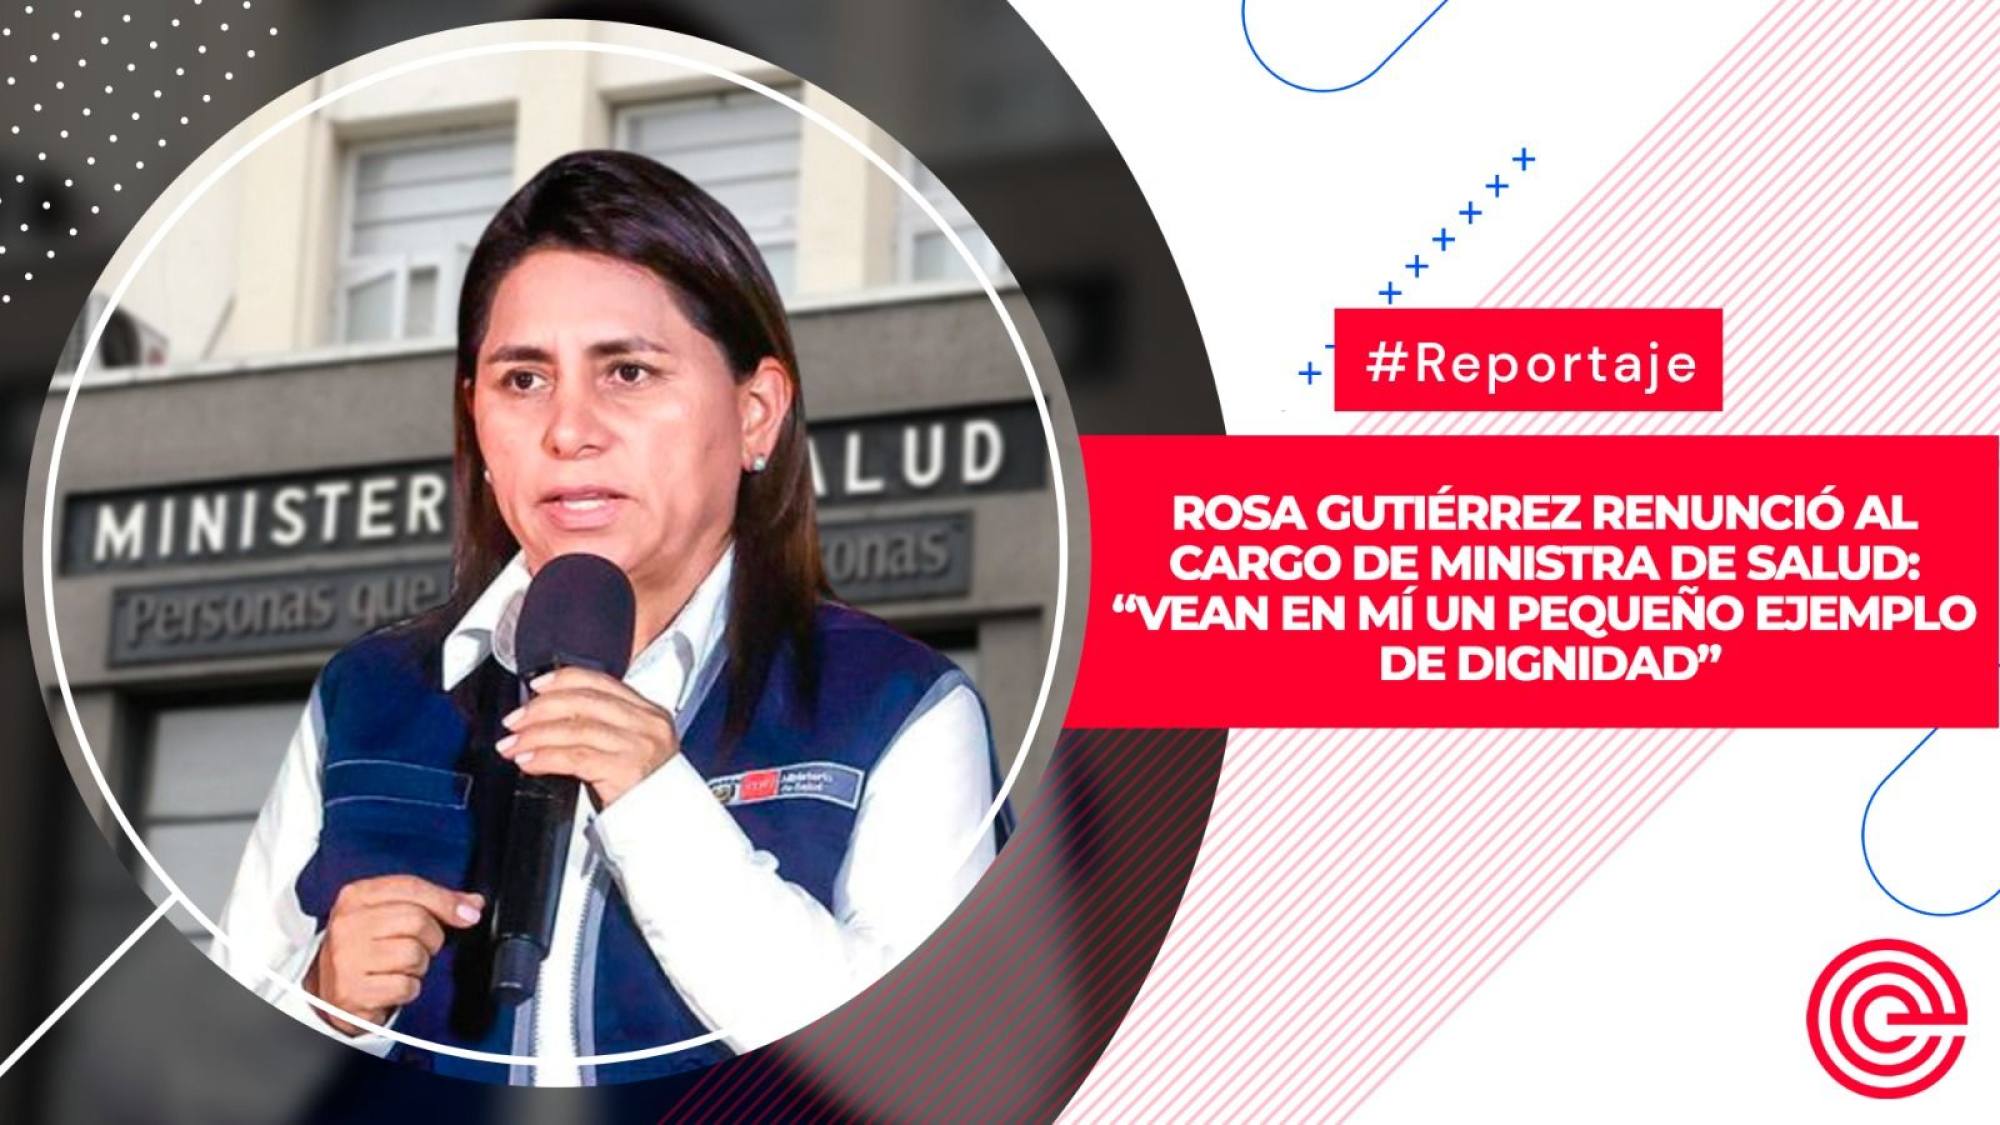 Rosa Gutiérrez renunció al cargo de ministra de Salud: “vean en mí un pequeño ejemplo de dignidad”, Epicentro TV